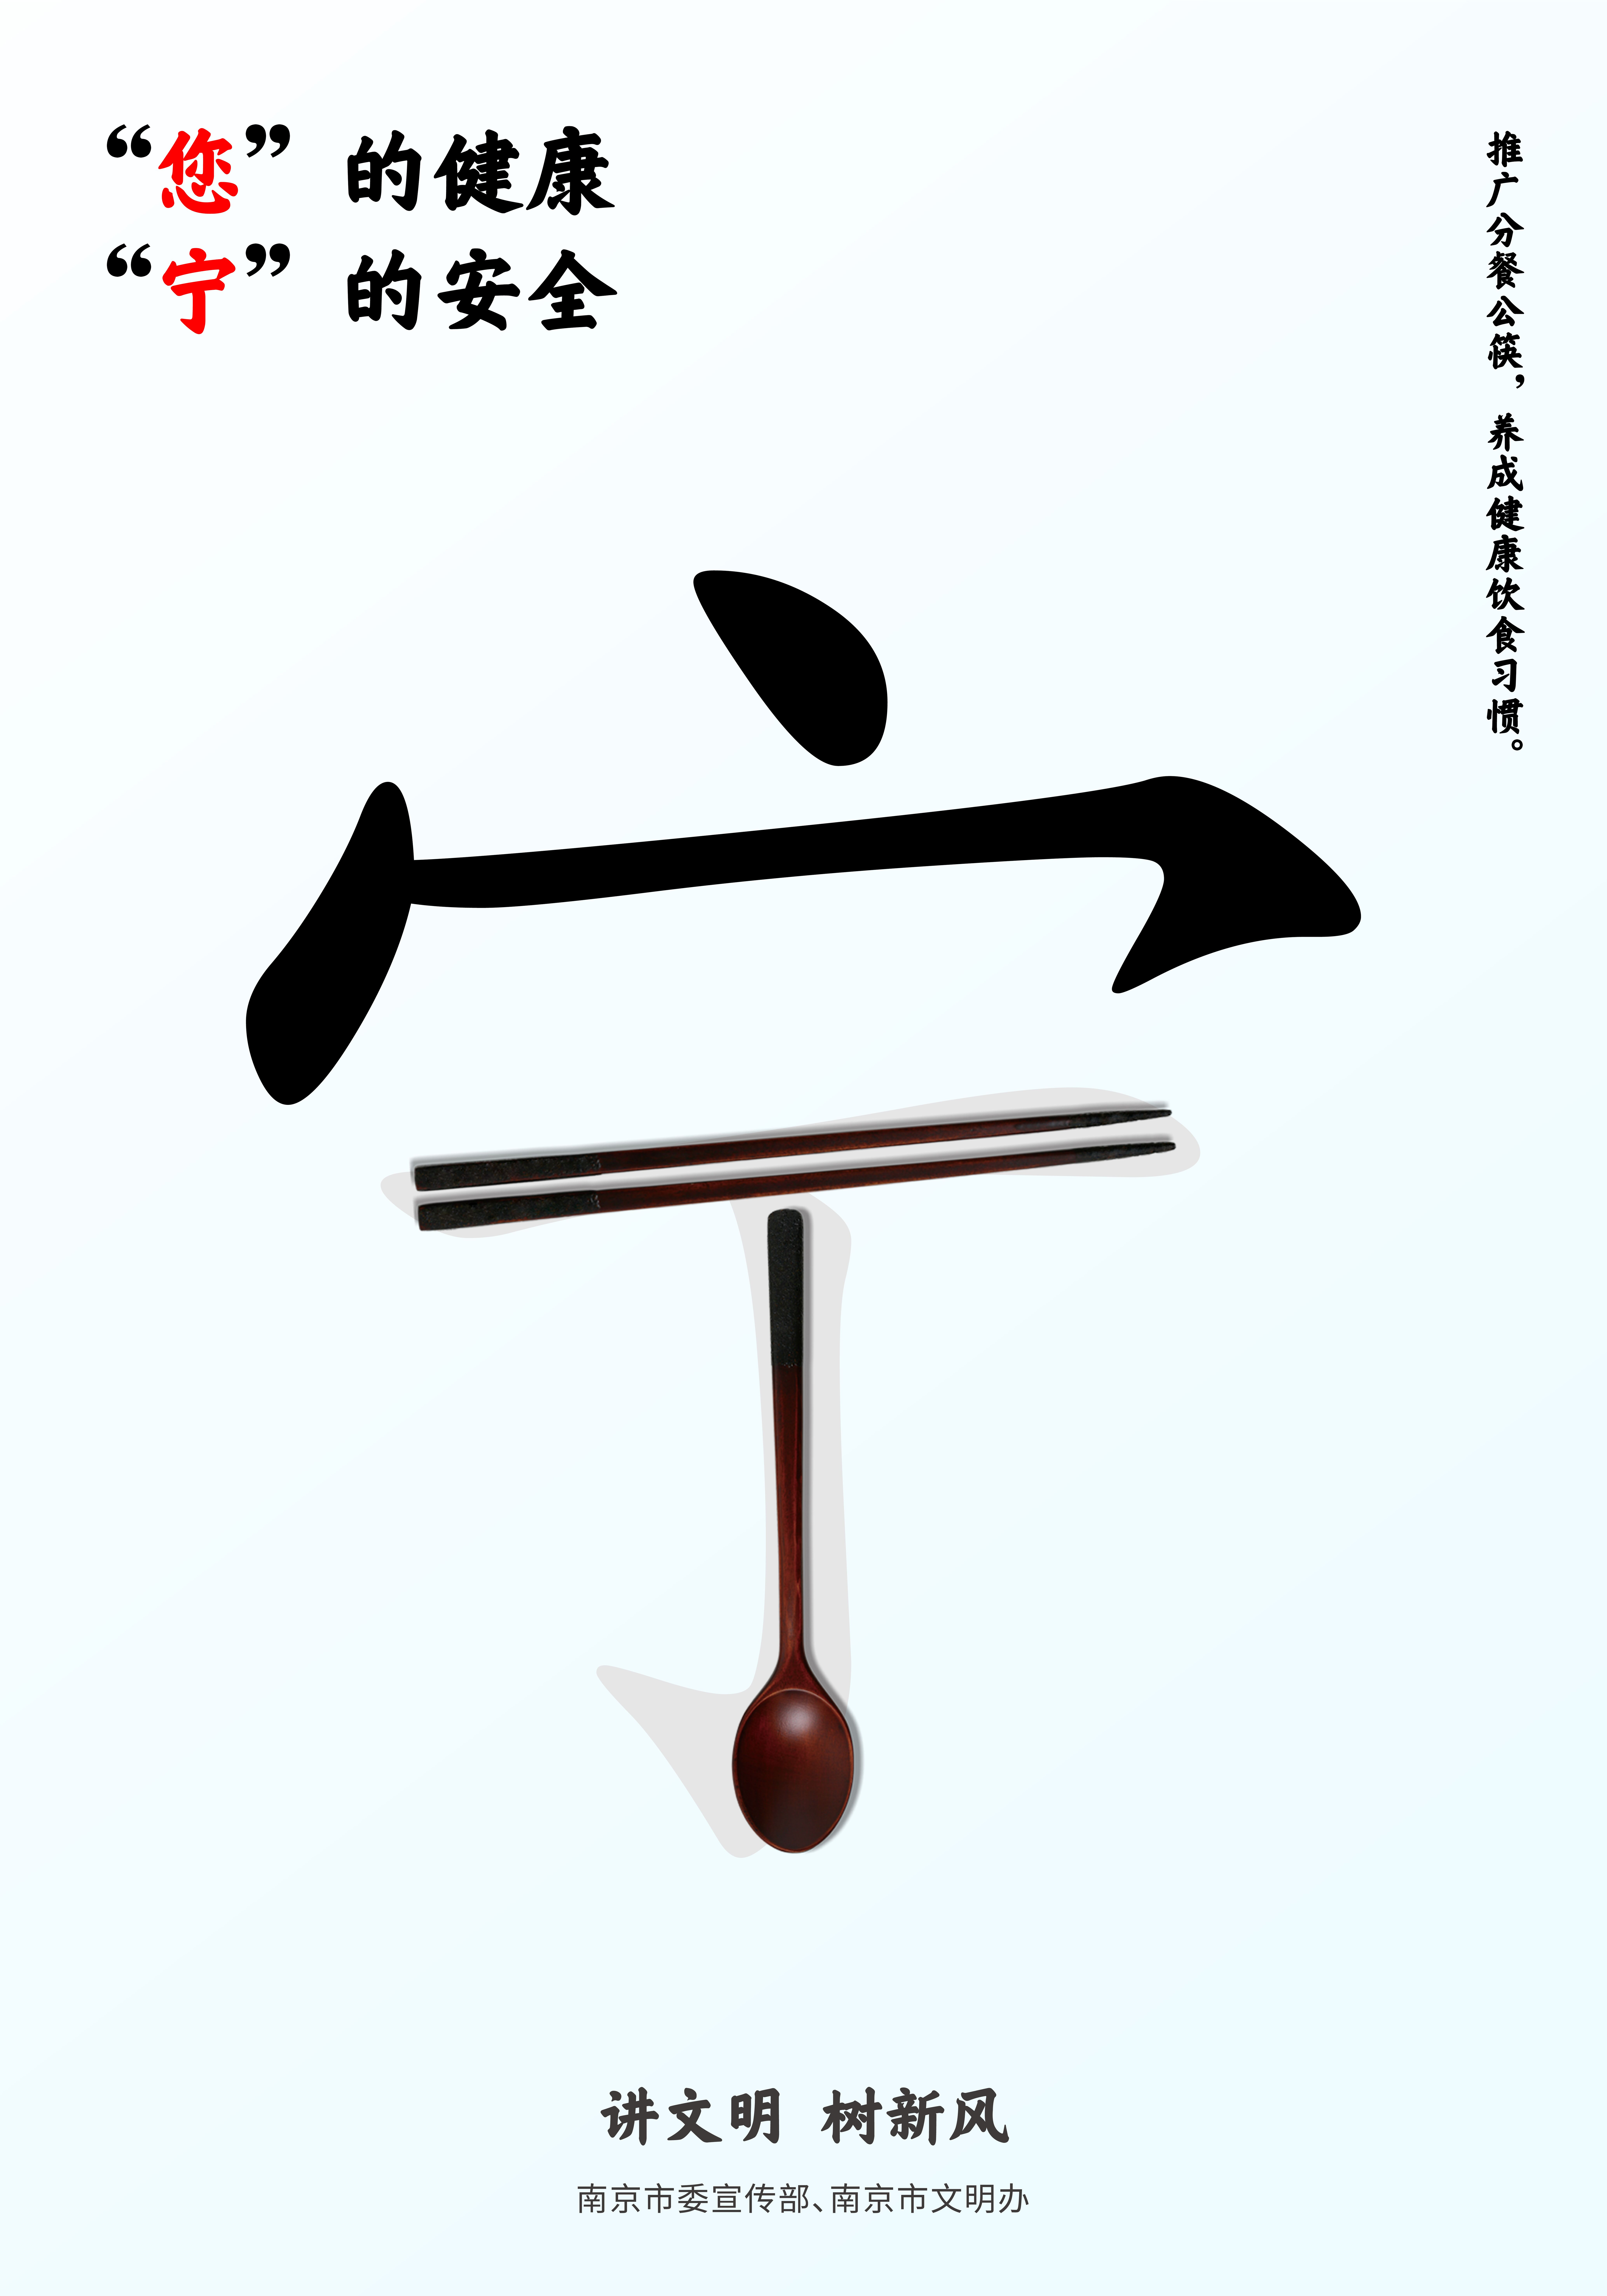 推广分餐公筷，养成健康饮食习惯1.jpg